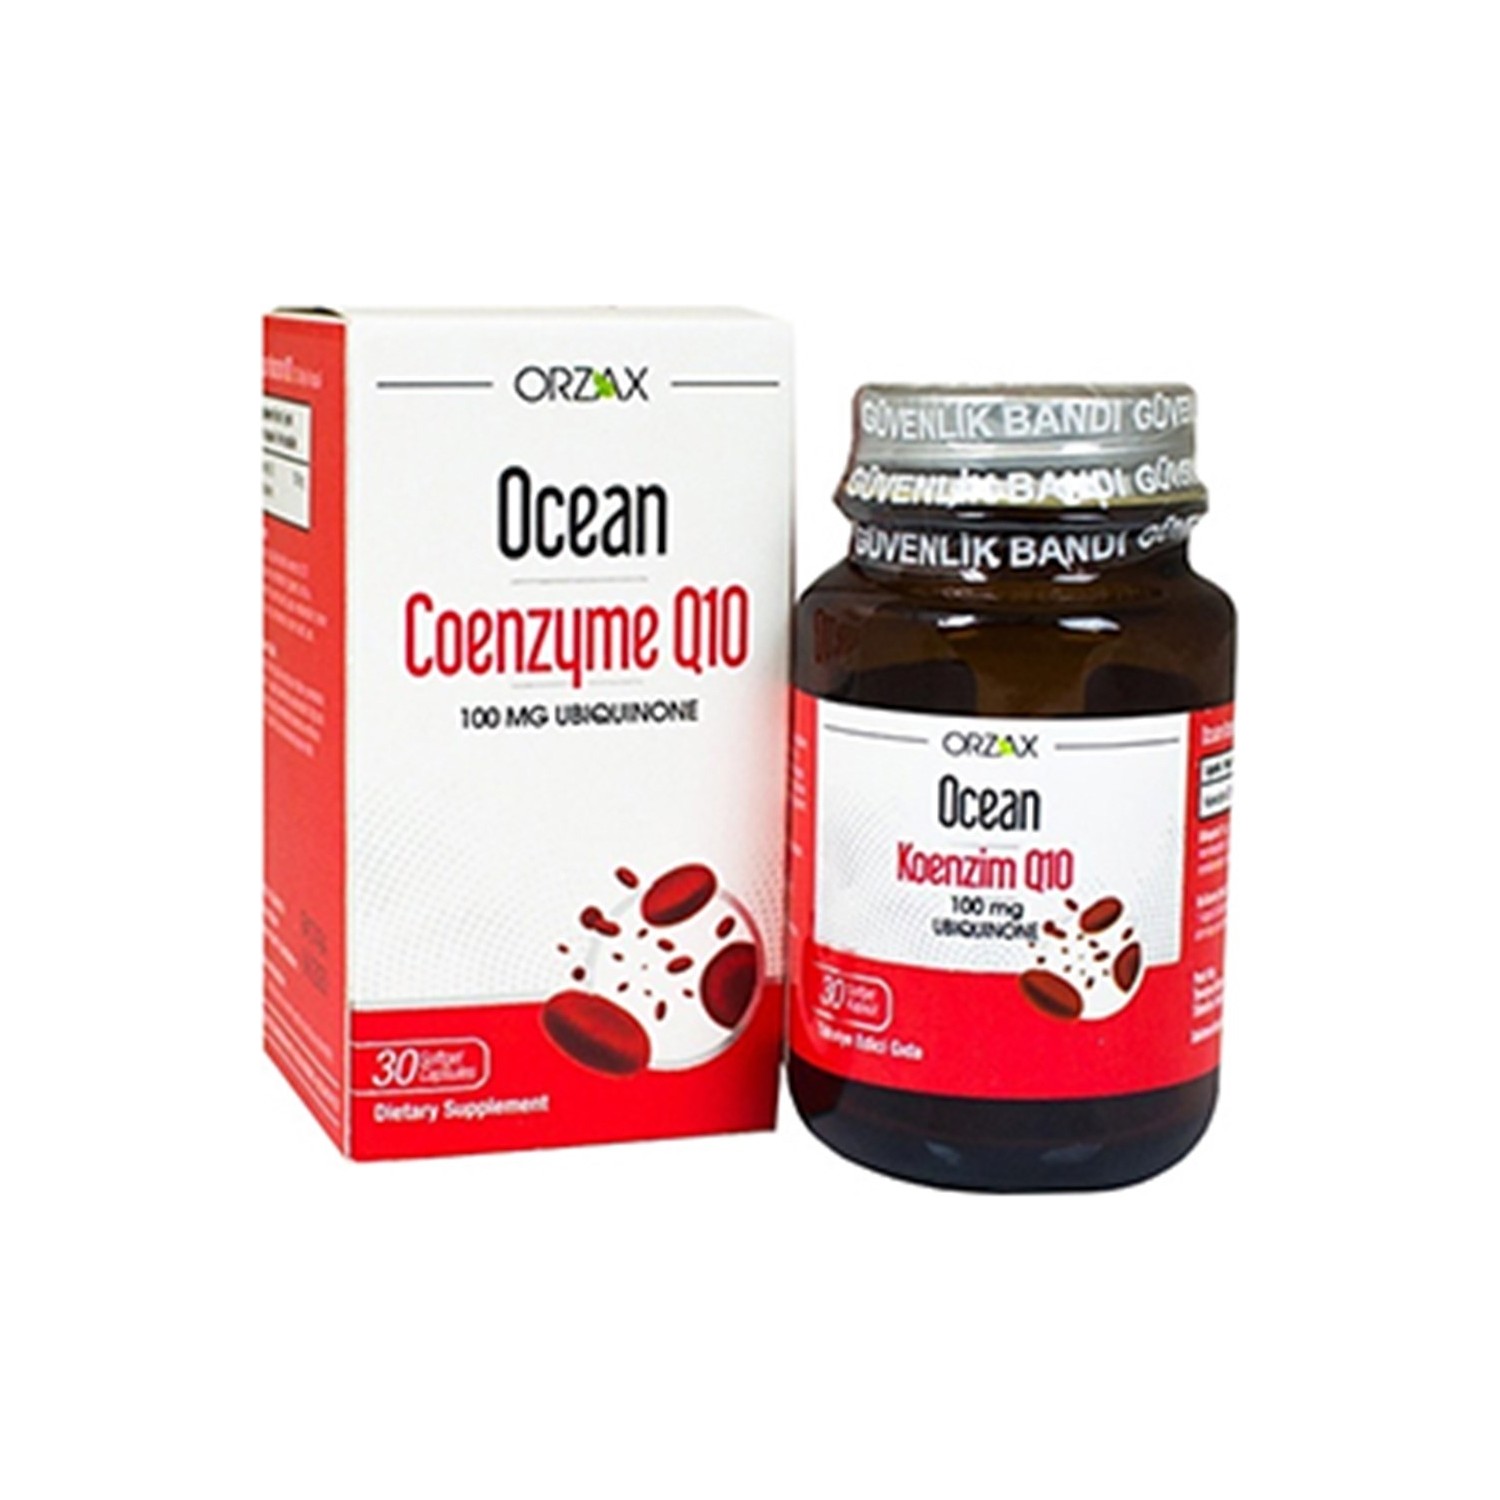 Коэнзим Q10 Ocean 100 мг, 30 капсул dr mercola липосомальный коэнзим q10 100 мг 30 капсул